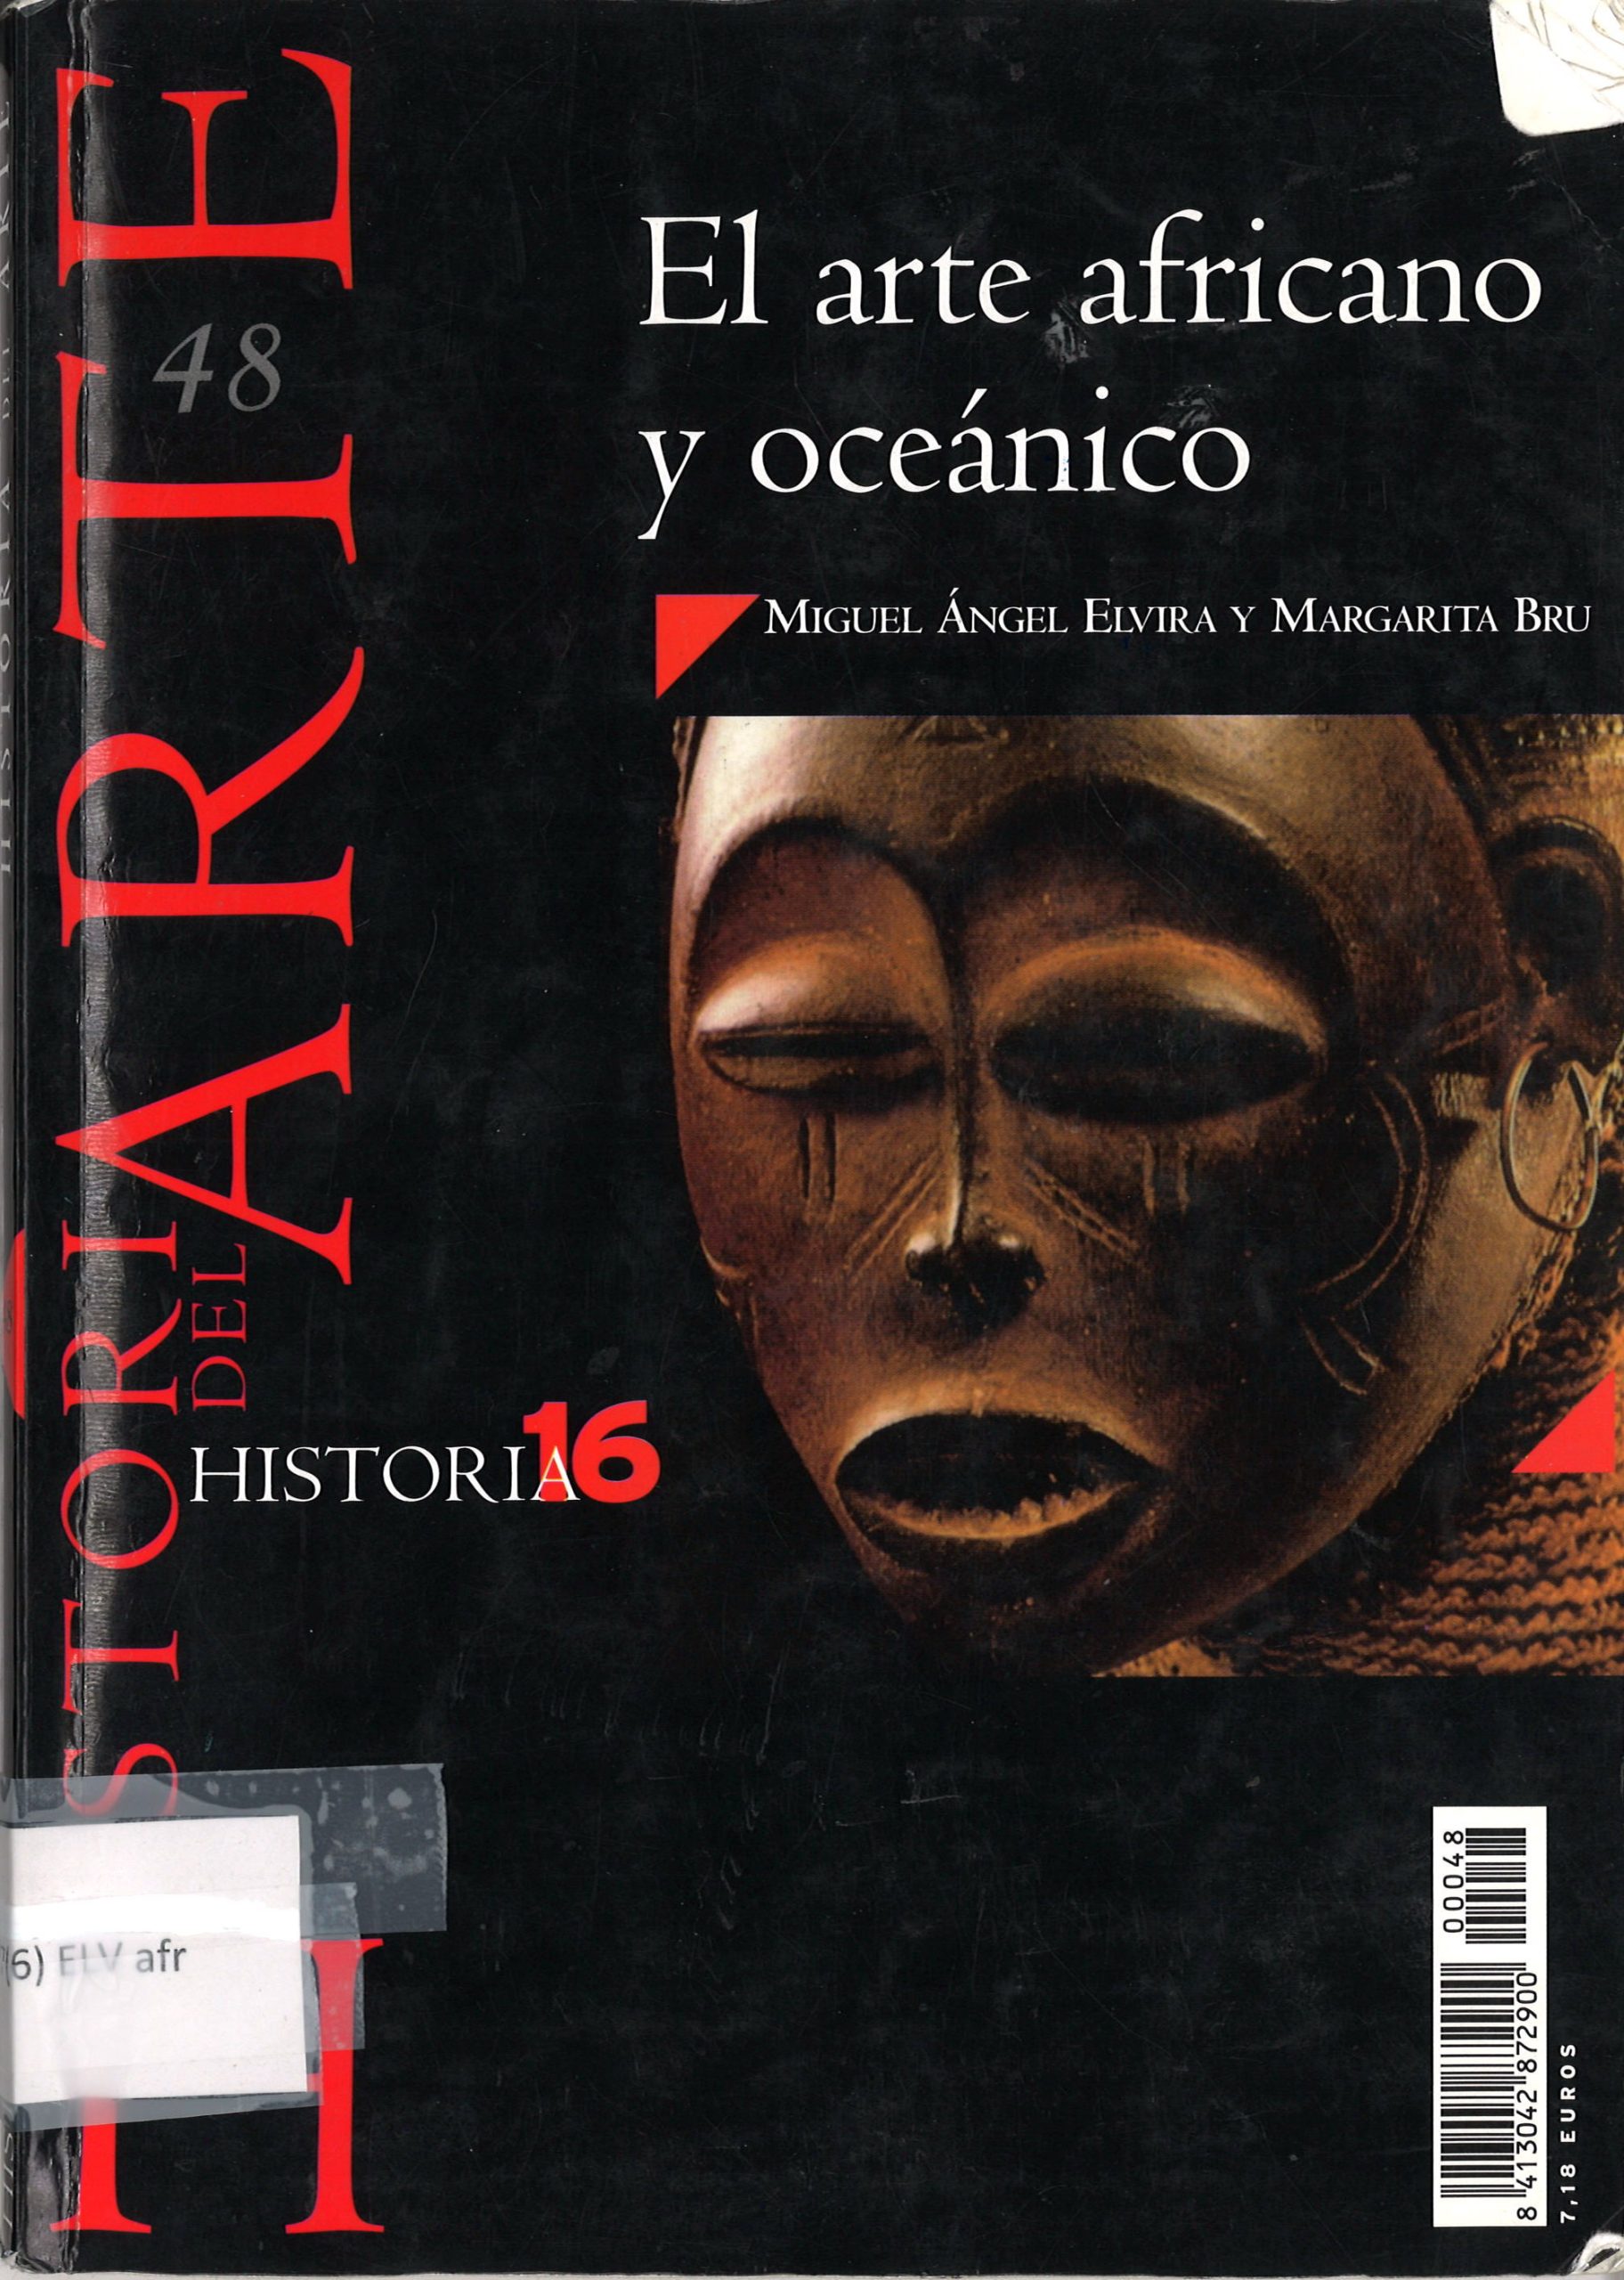 El arte africano y oceánico - Miguel Ángel Elvira y Margarita Bru-image